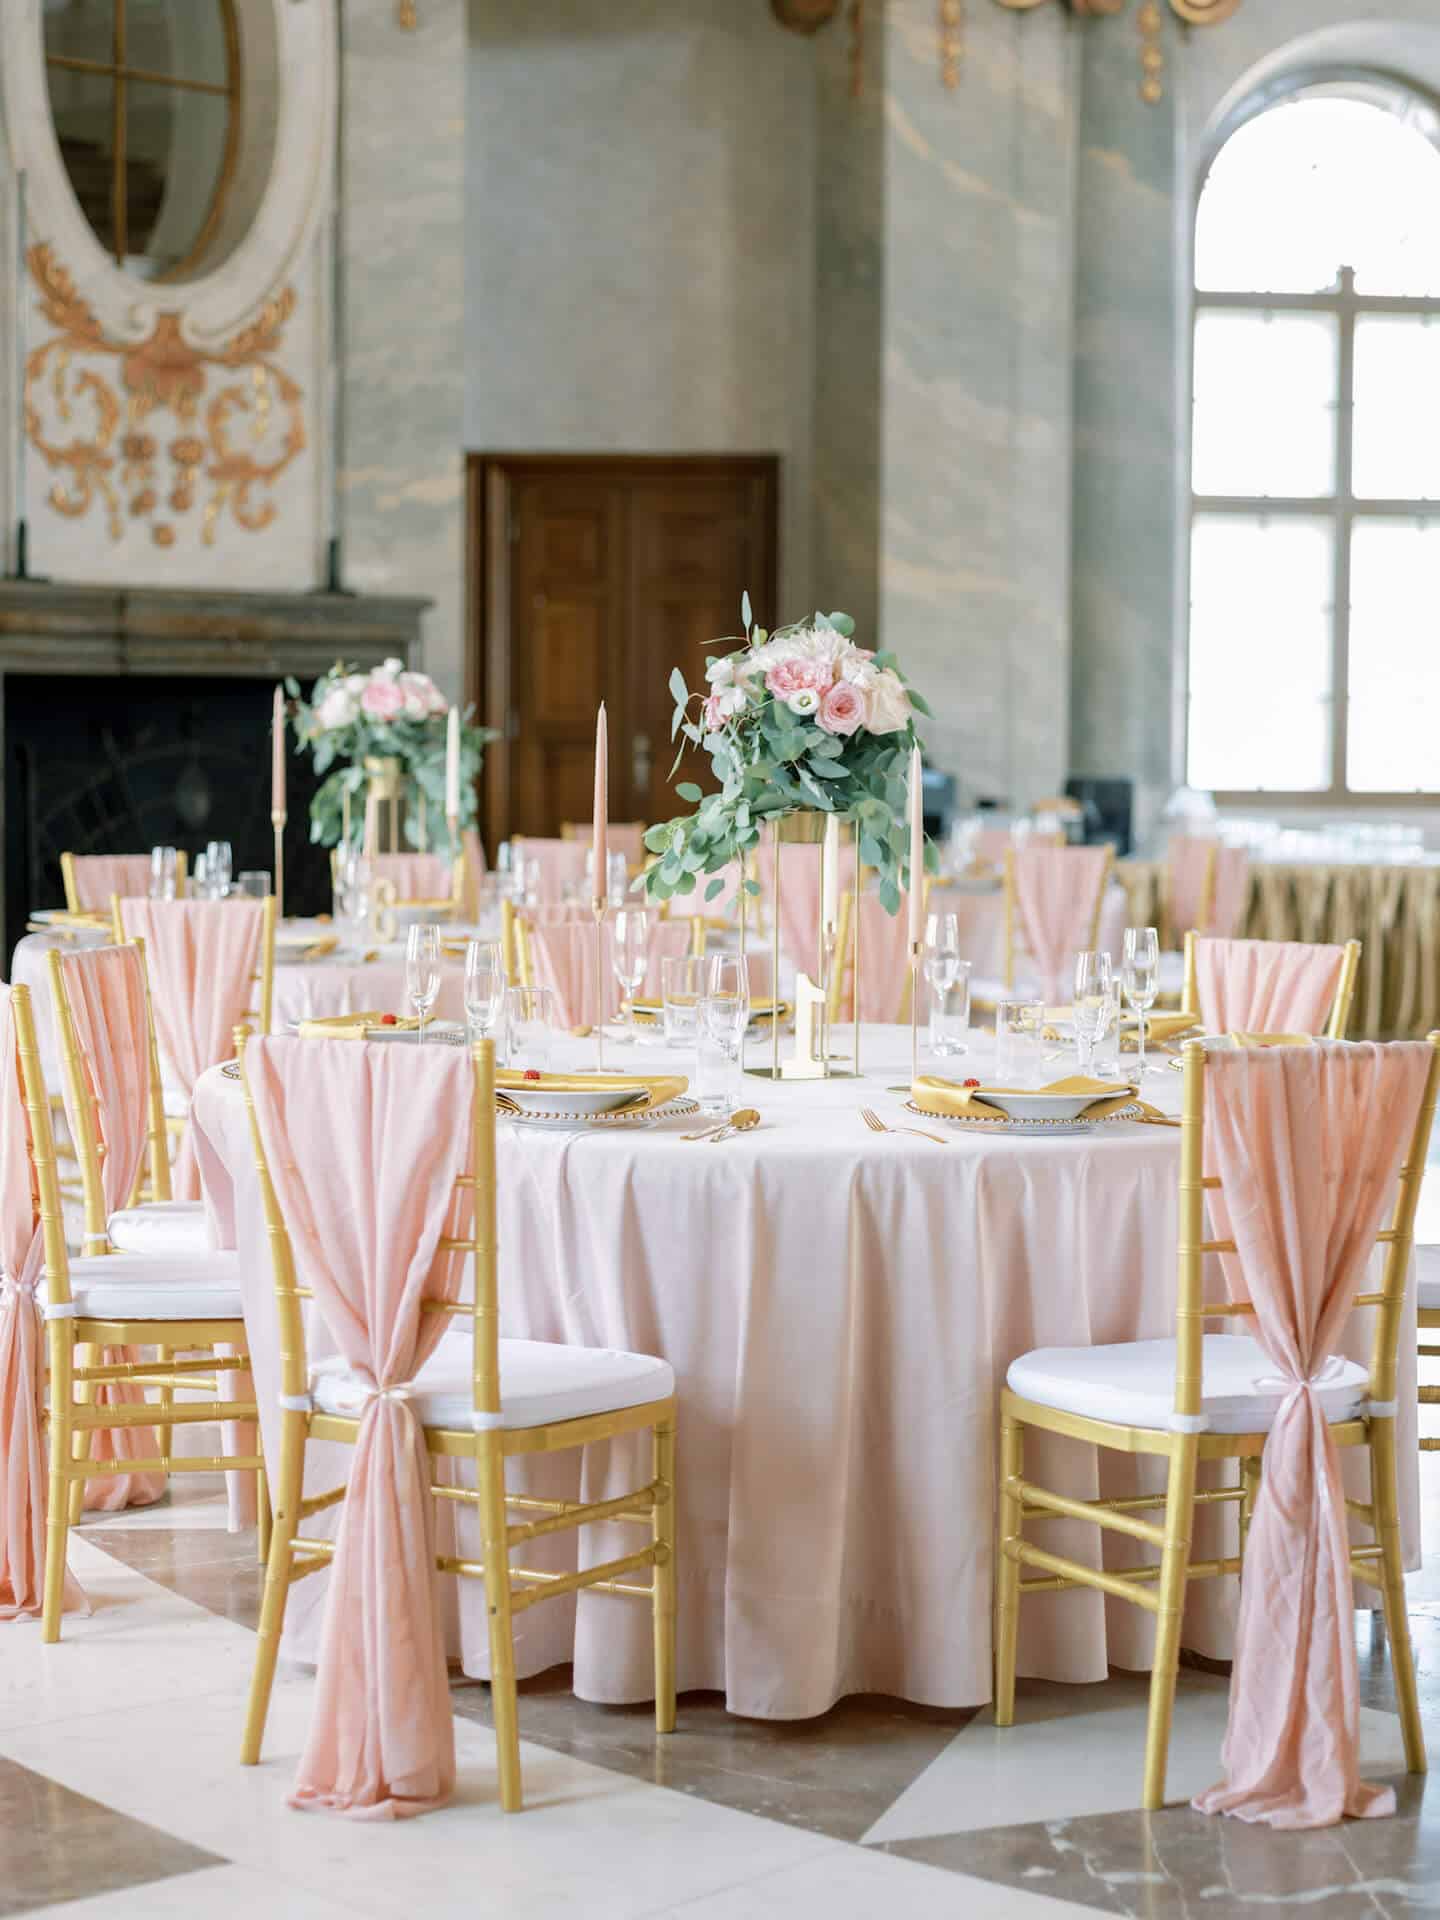 Zámecký catering - dekorovaná svatební tabule